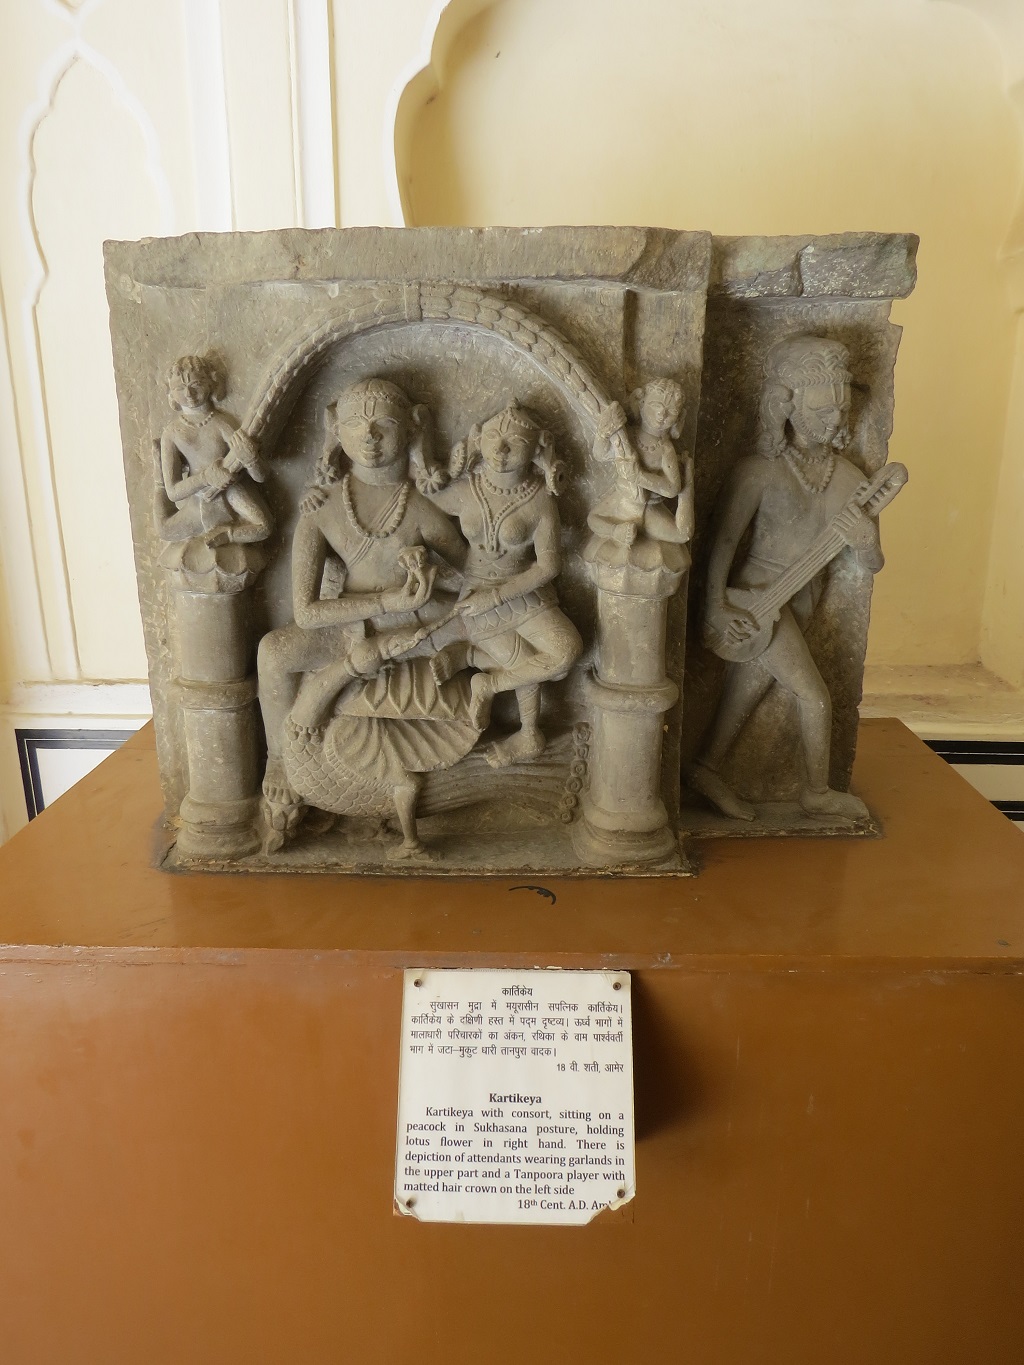 18th Cent. A.D. Kartikeya (Amer)